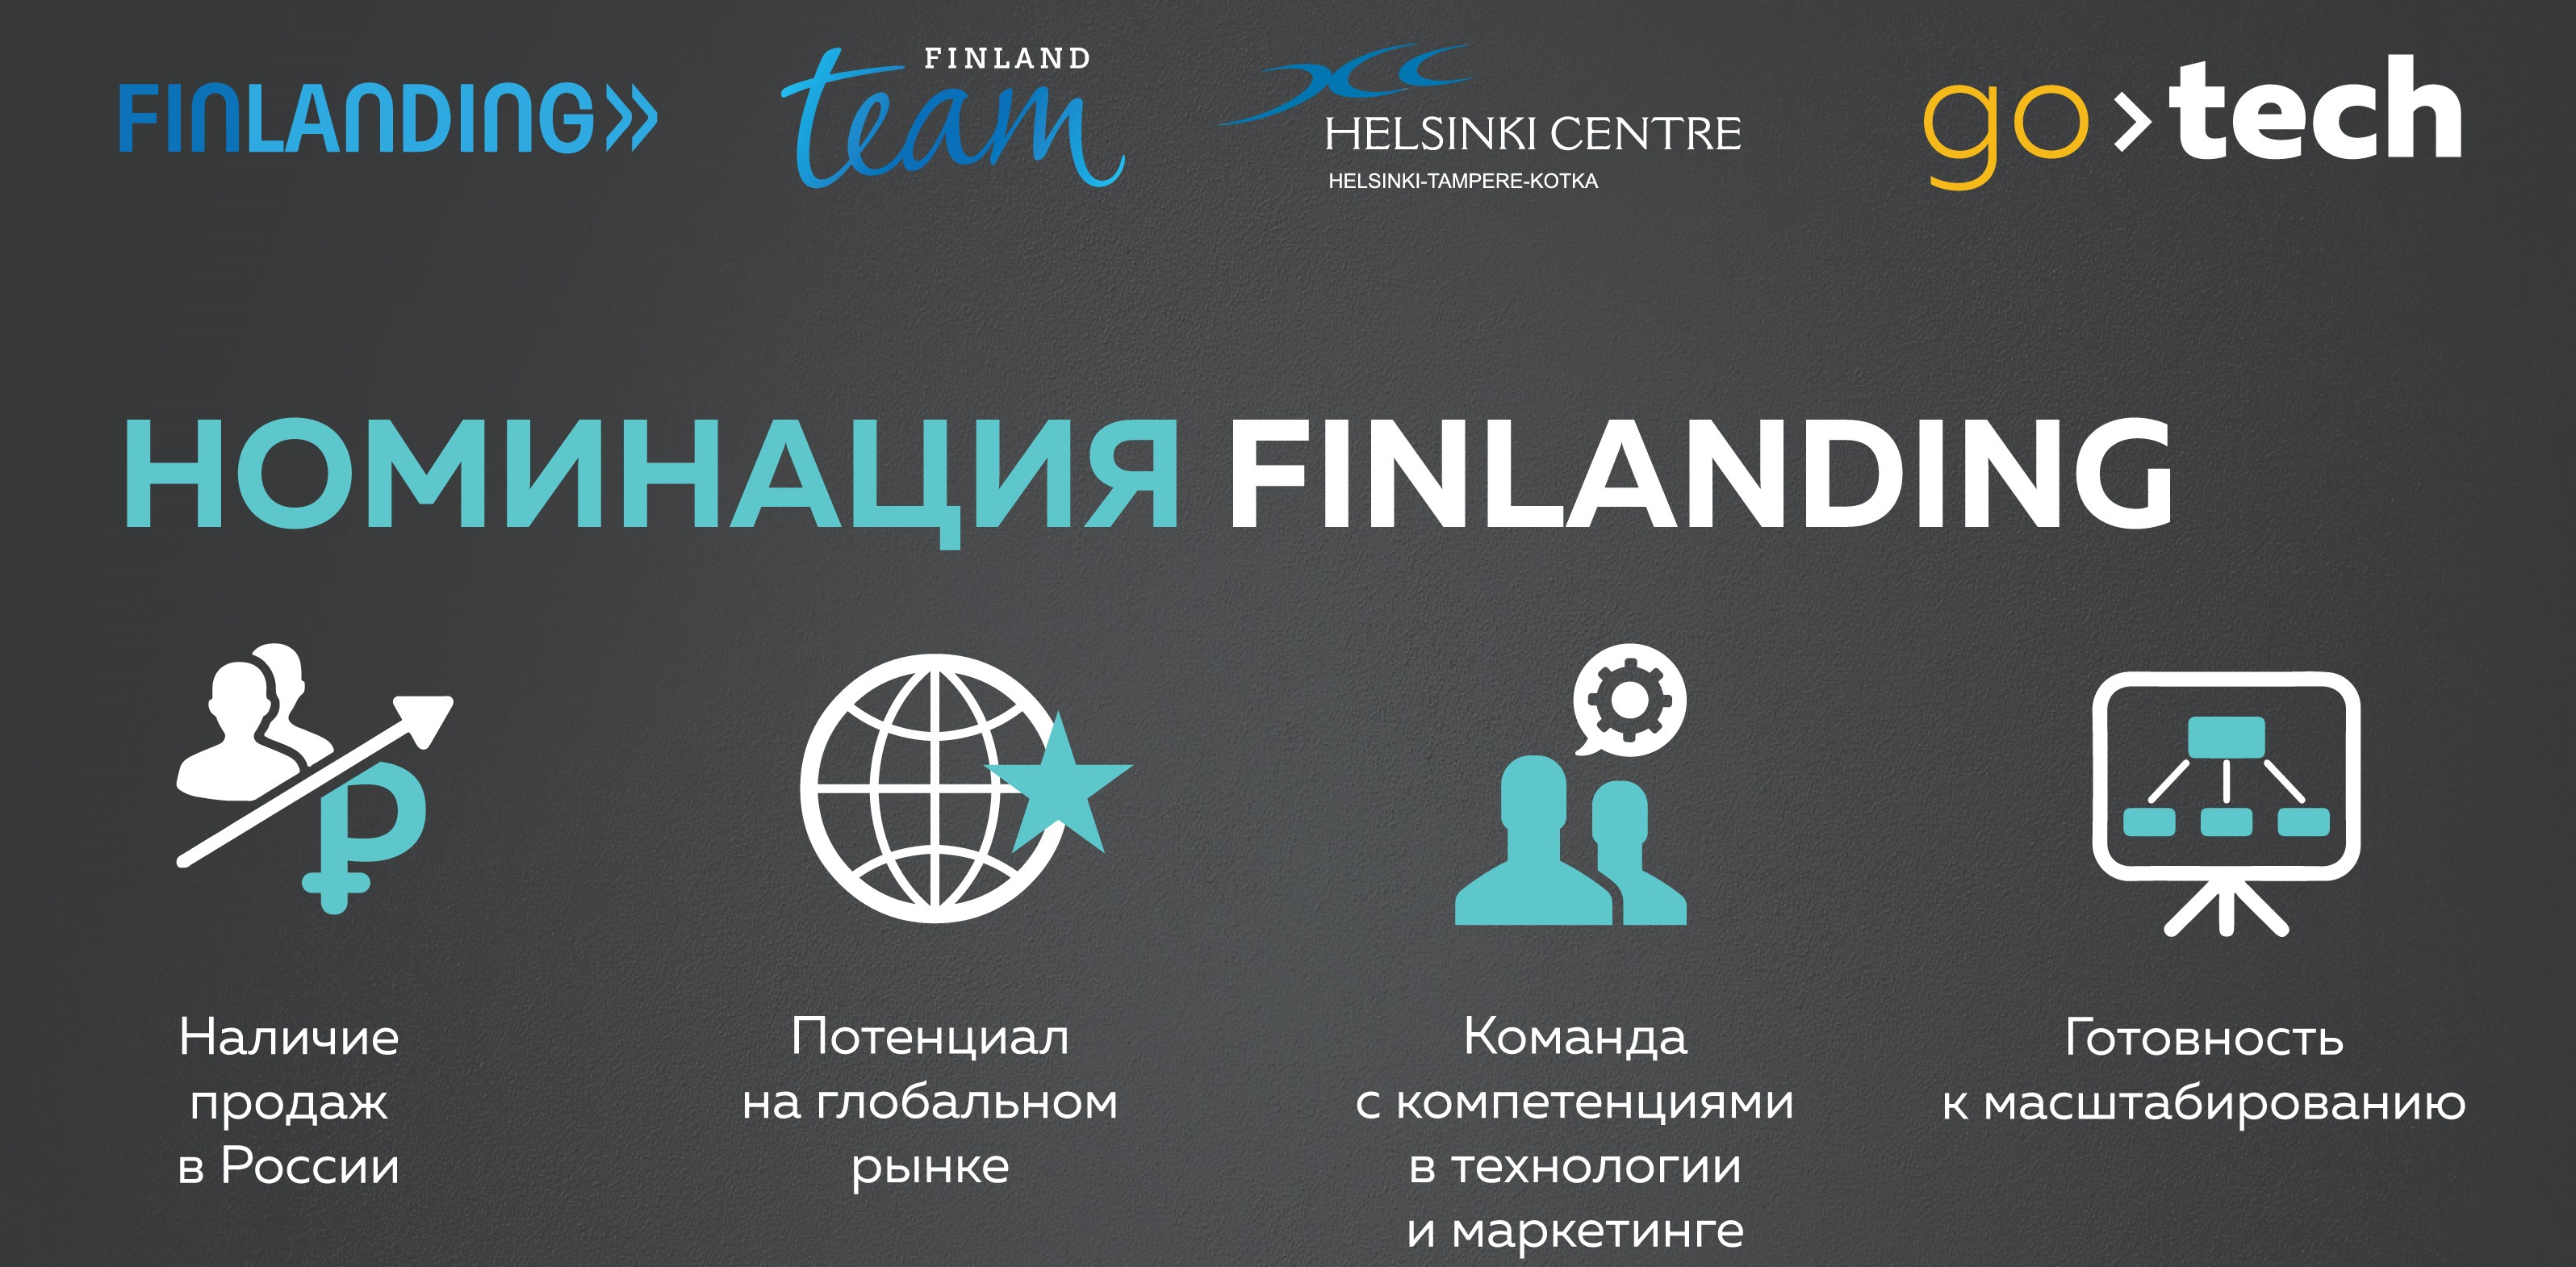 Конкурс GoTech и Team Finland открывают окно в Европу для ИТ-стартапов